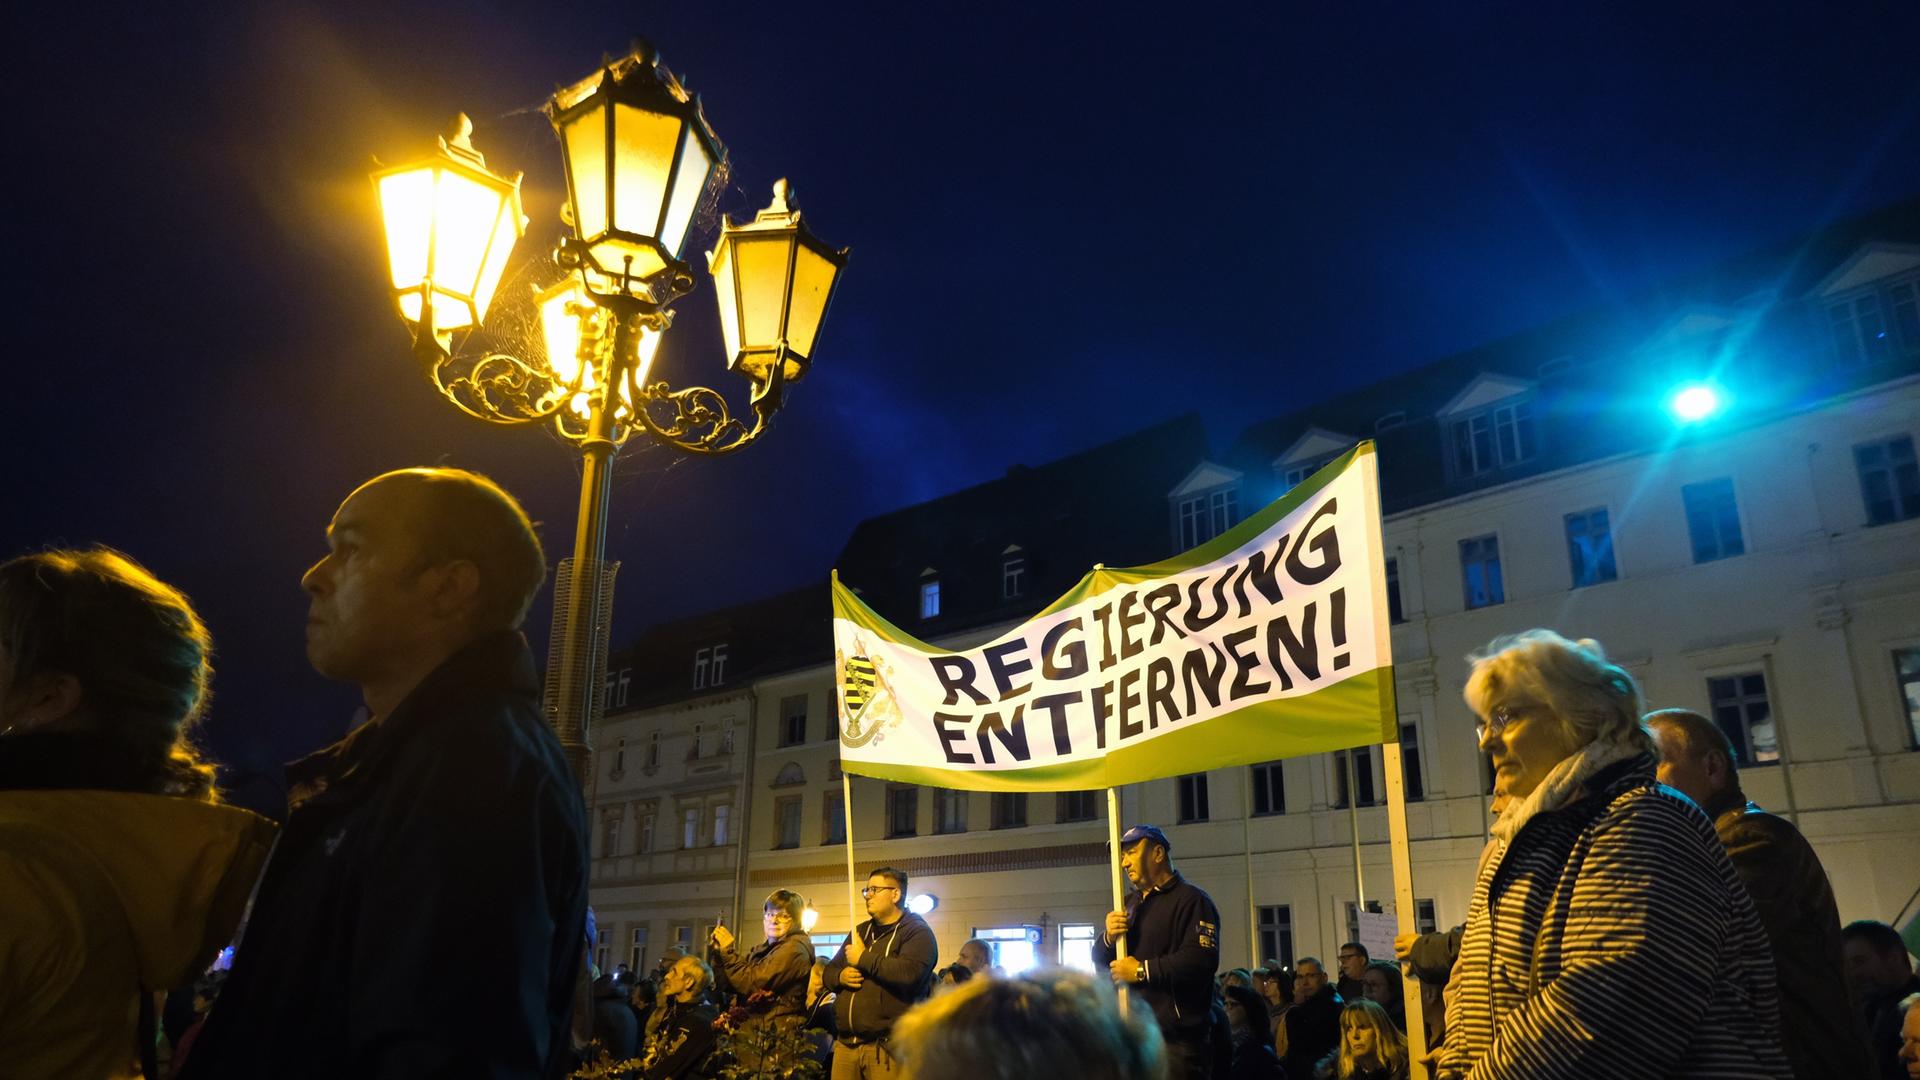 Teilnehmer einer Demonstration versammeln sich auf dem Marktplatz, im Hintergrund ein Transparent der Kleinpartei "Freie Sachsen" mit dem Schriftzug "Regierung entfernen!"